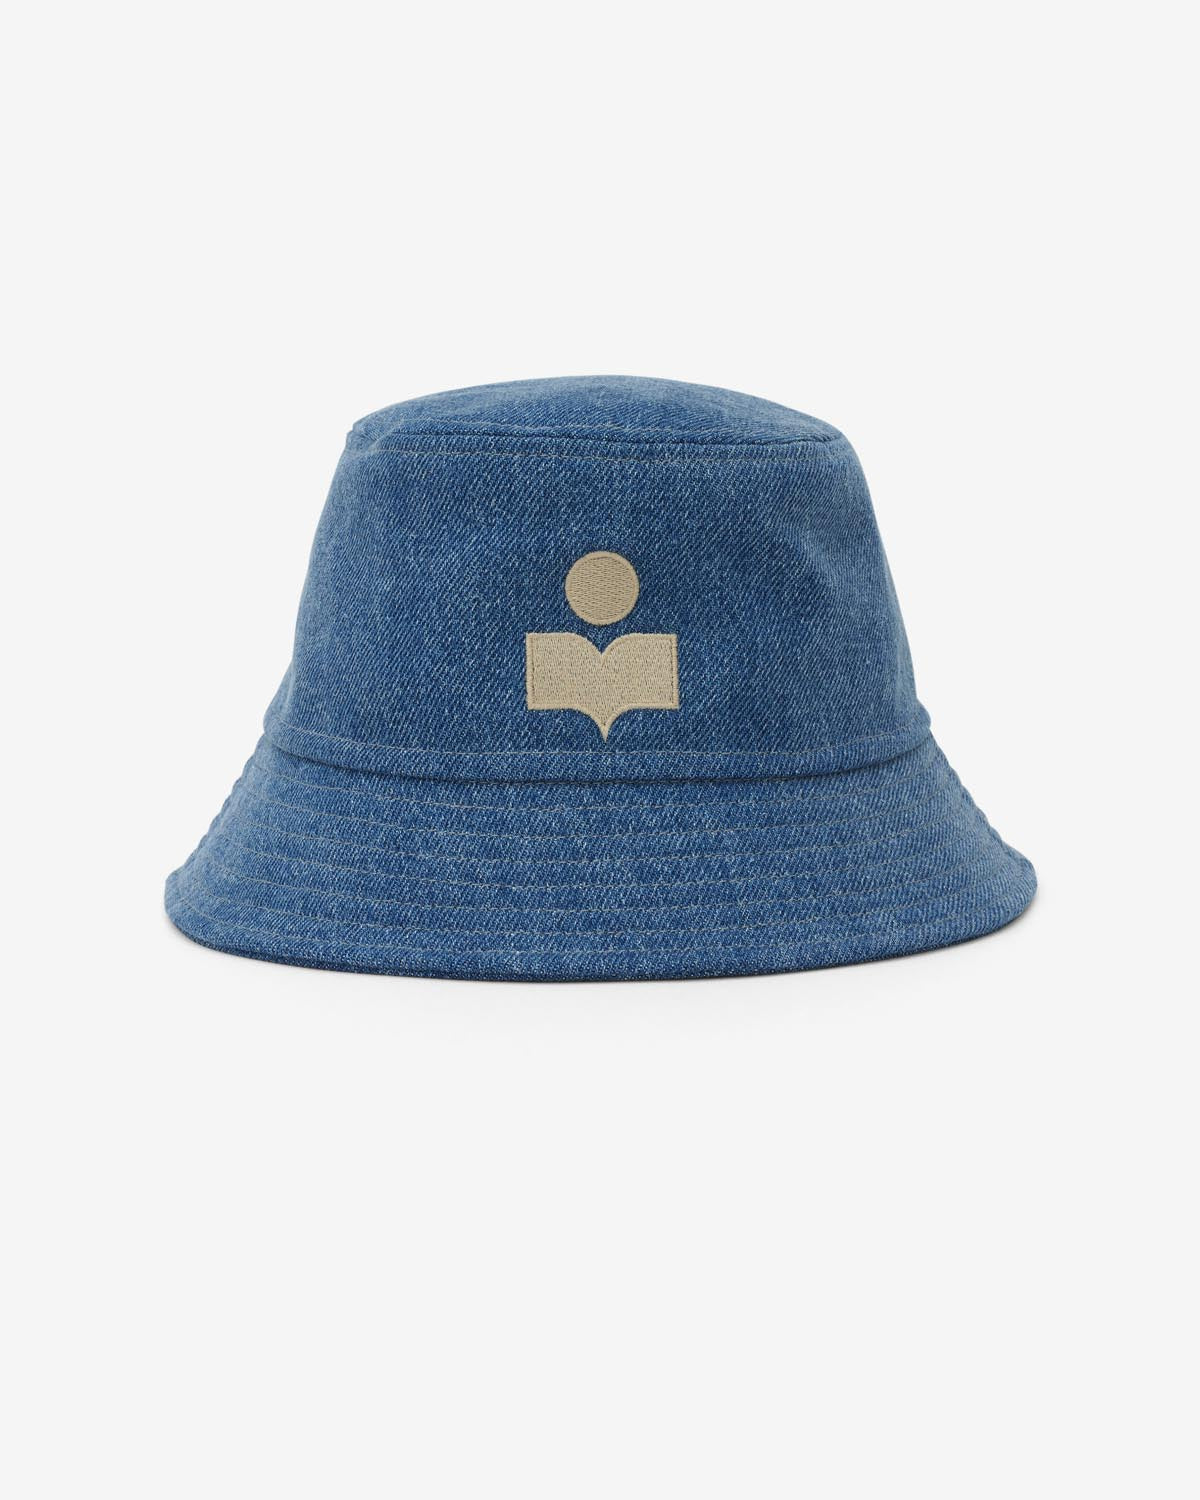 Sombrero haley Woman Azul claro 1